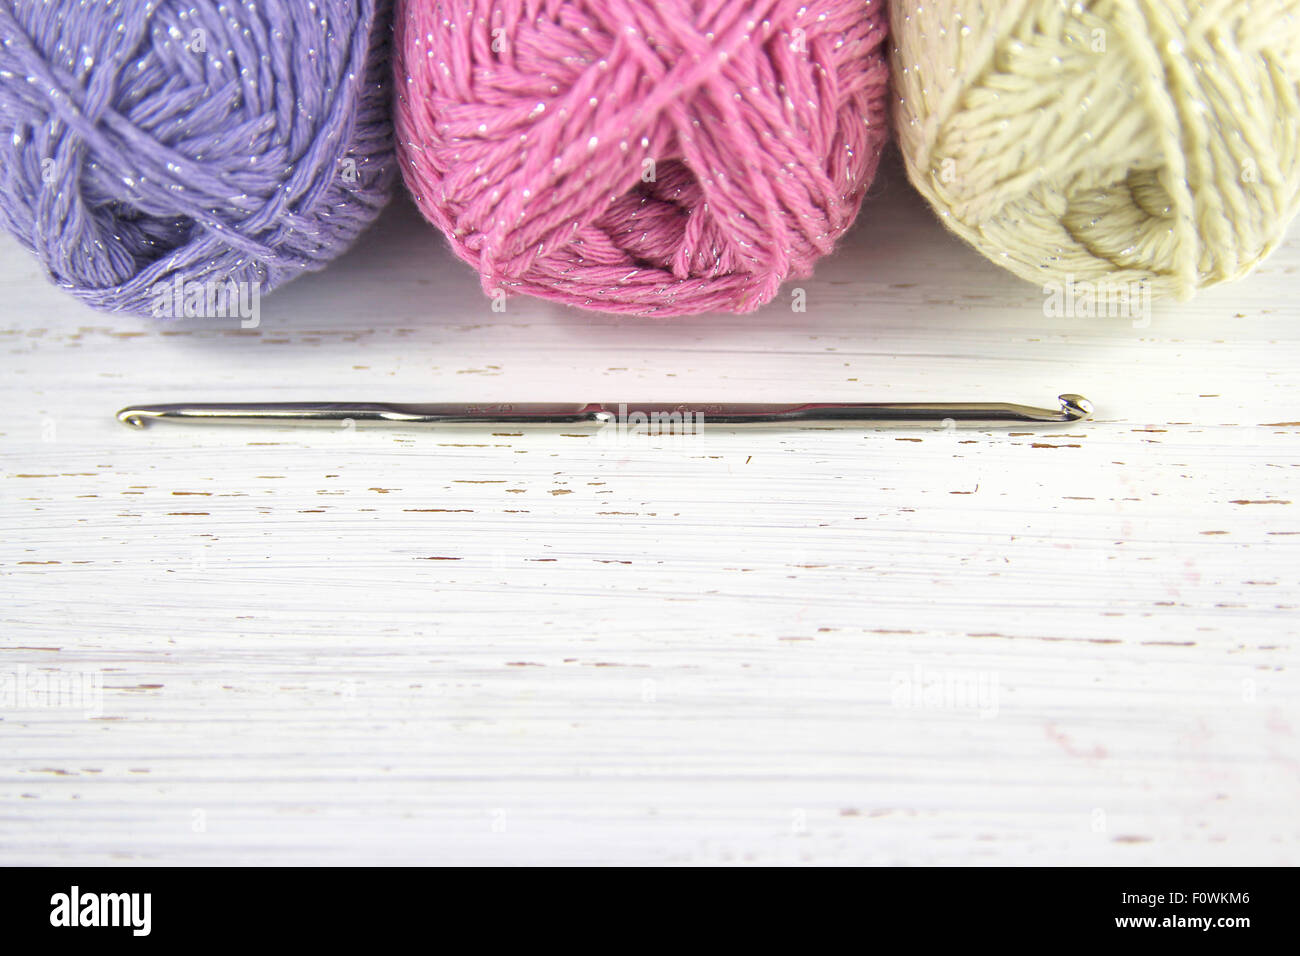 Hilados de lana ganchillo con colores pastel y copie el espacio en dificultades de fondo de madera Foto de stock